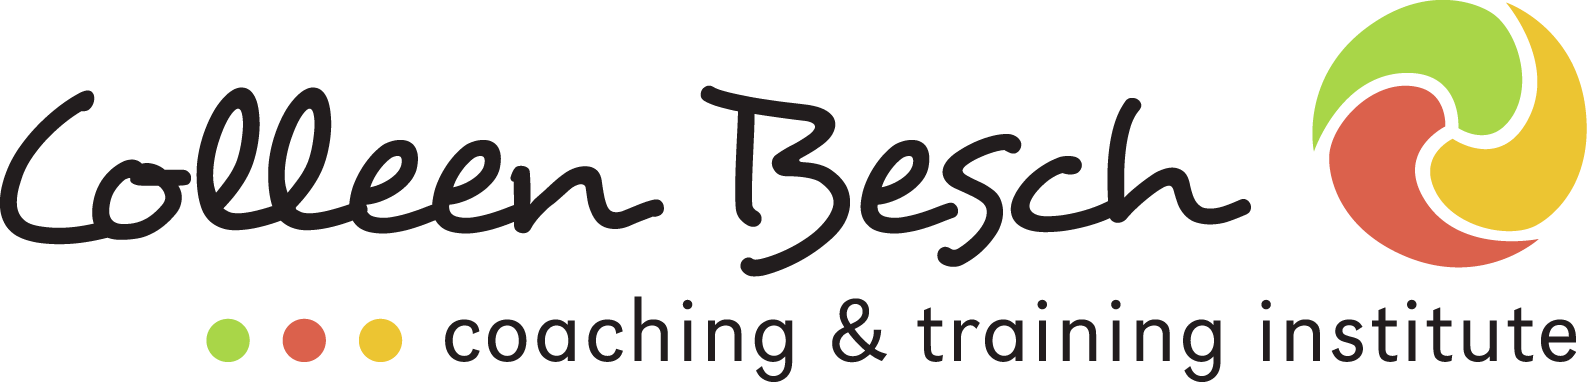 Colleen Besch Logo